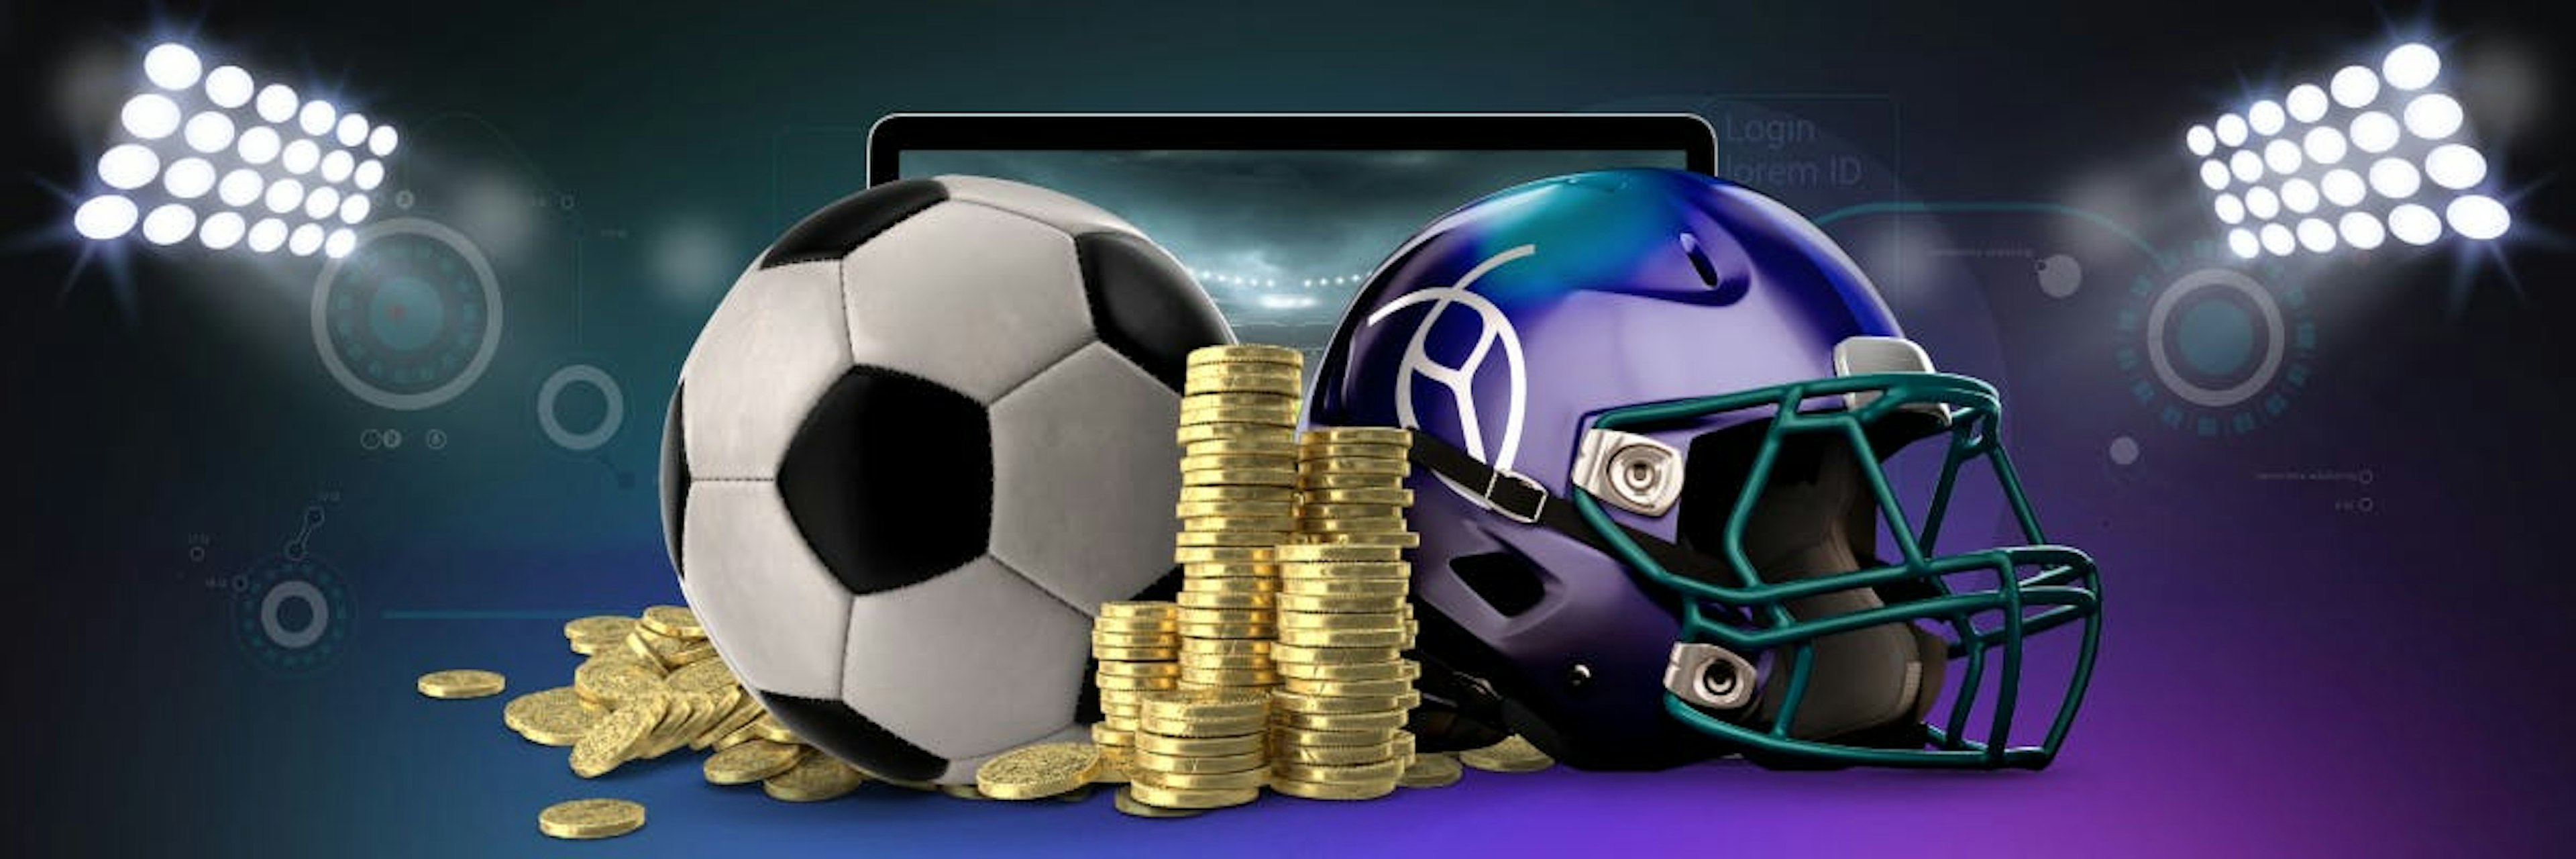 sports-betting-blog-header-a